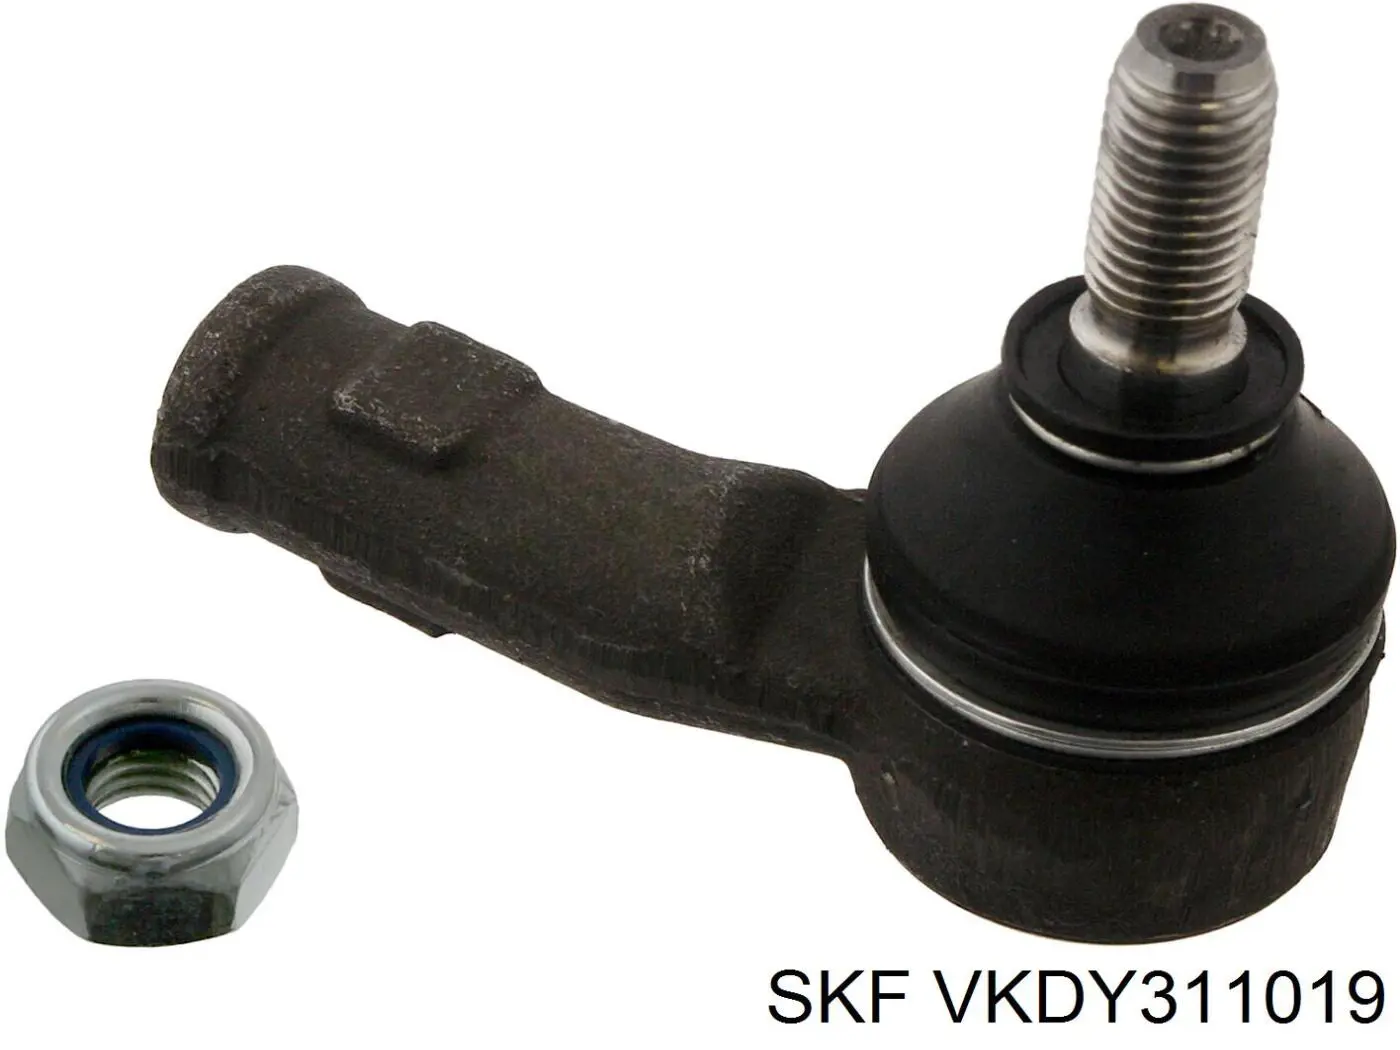 VKDY311019 SKF rótula barra de acoplamiento exterior